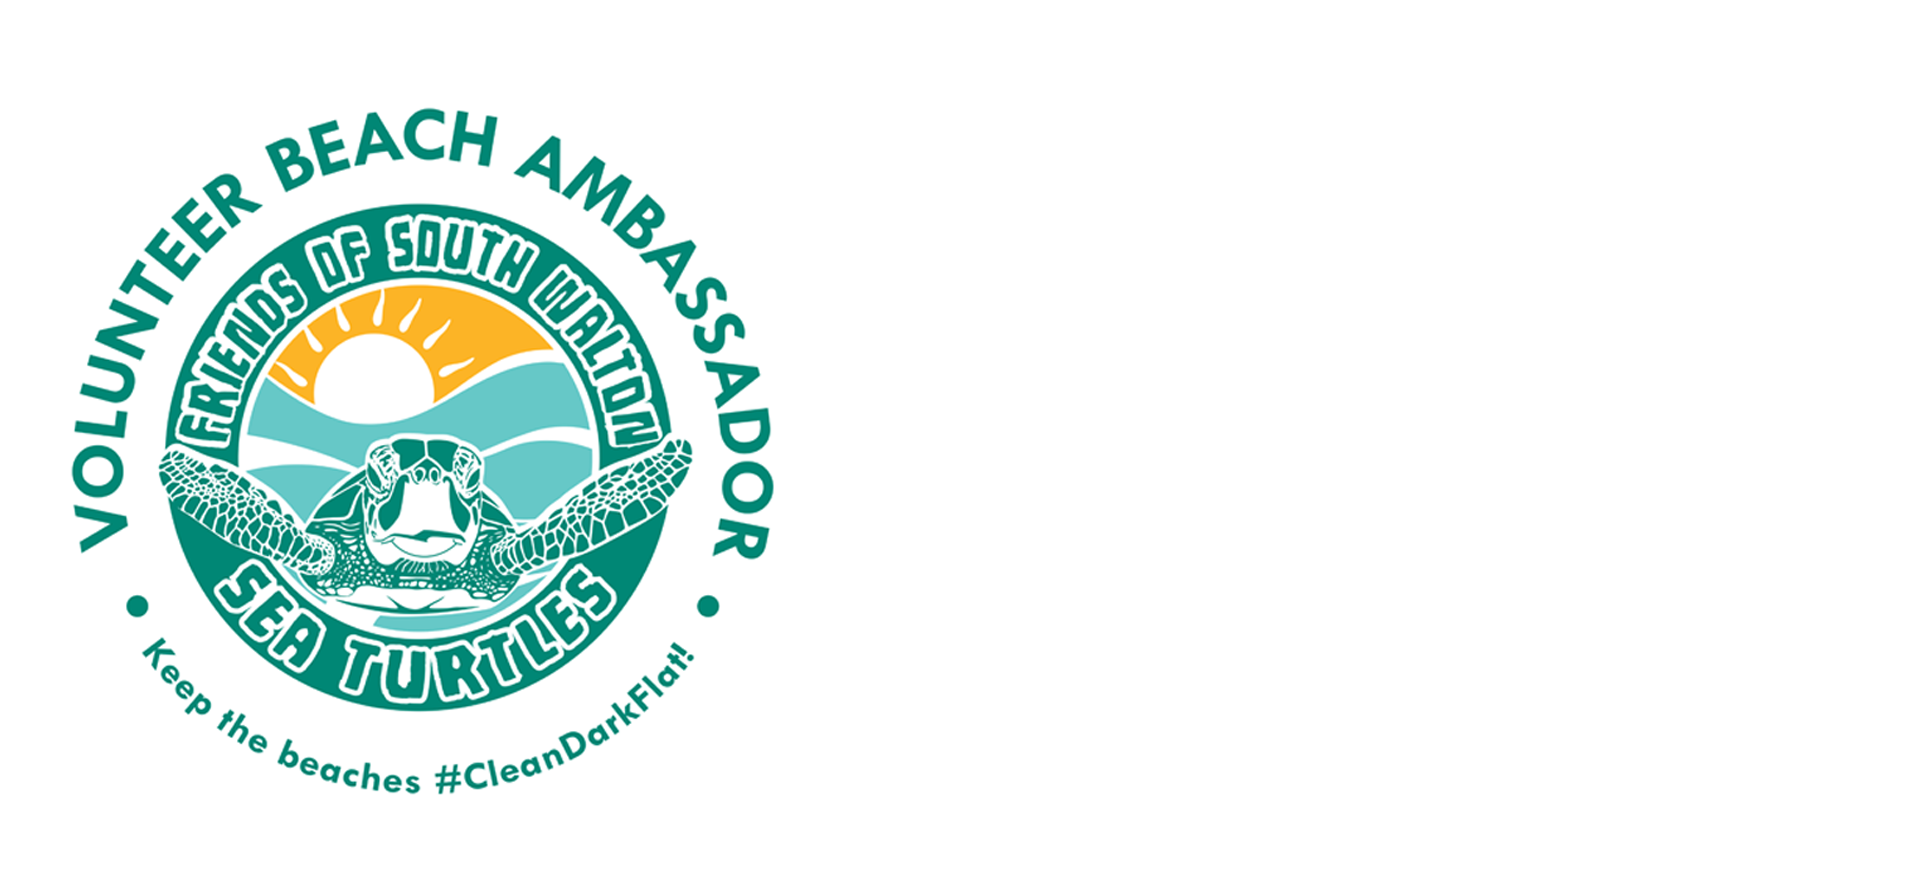 Friends of South Walton Sea Turtles (FOSWST)